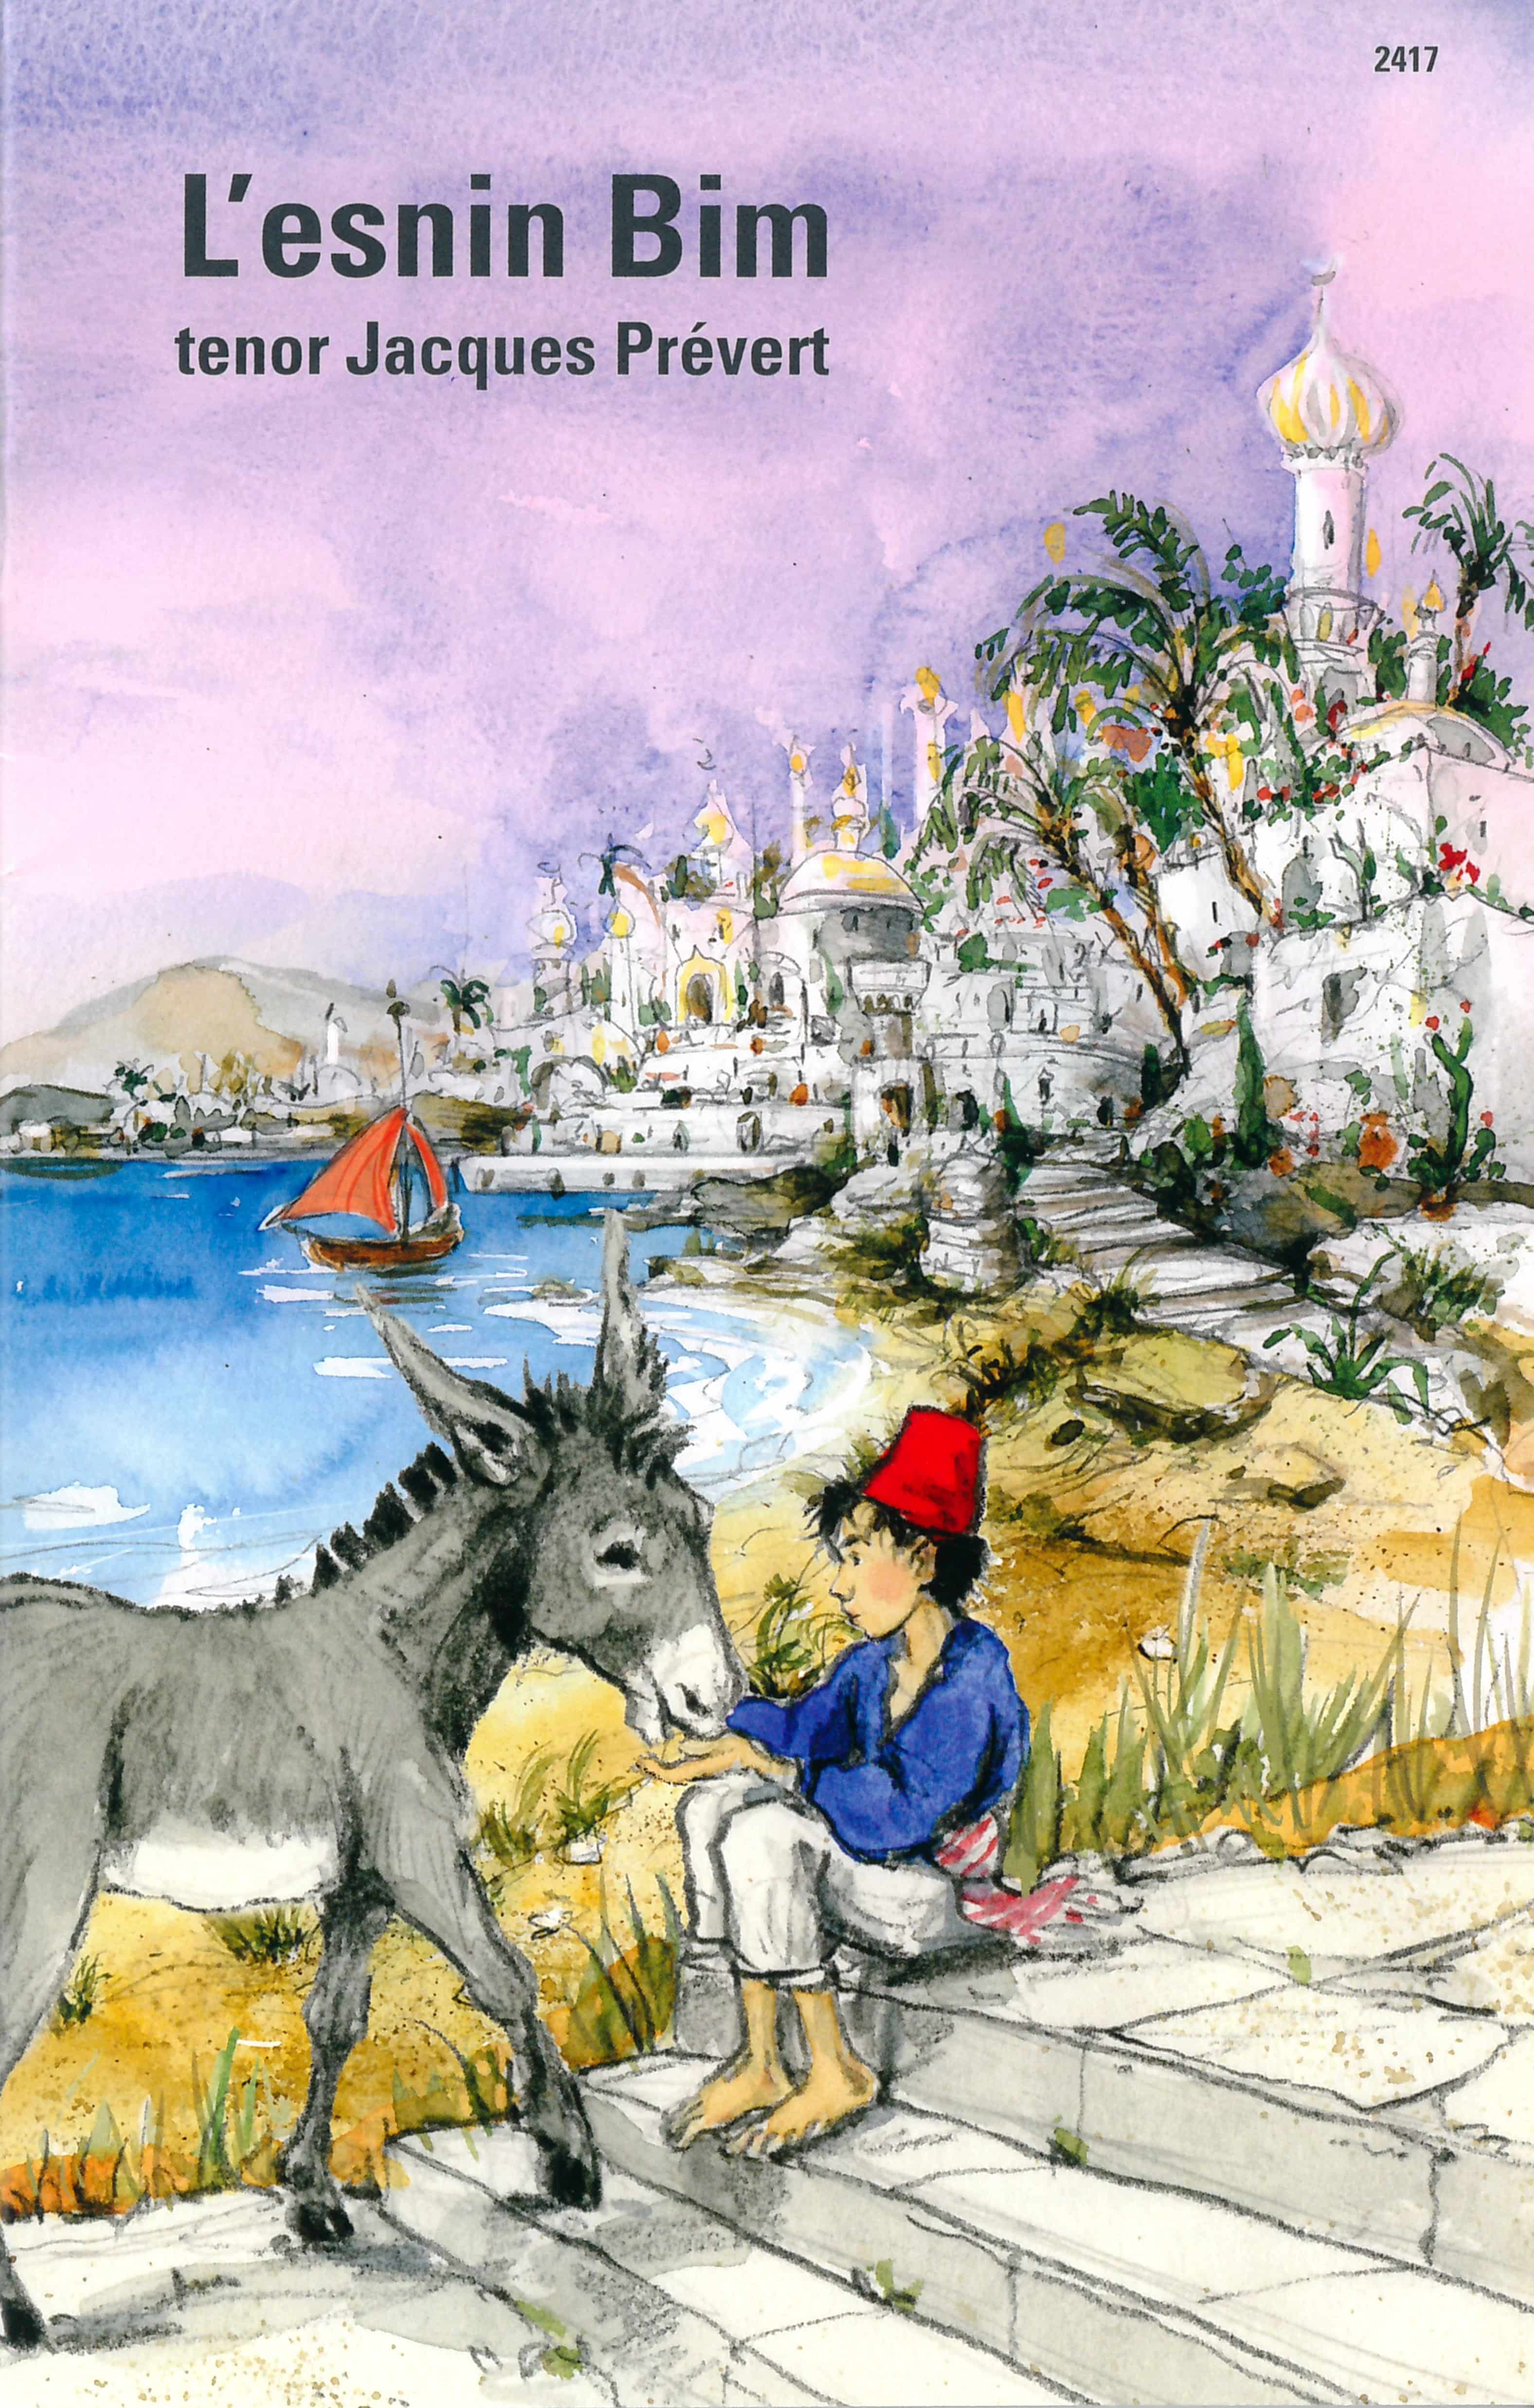 L’esnin Bim, ein Kinderbuch von Jacques Prévert, Illustration von Karin Widmer, SJW Verlag, Kinderbuchklassiker